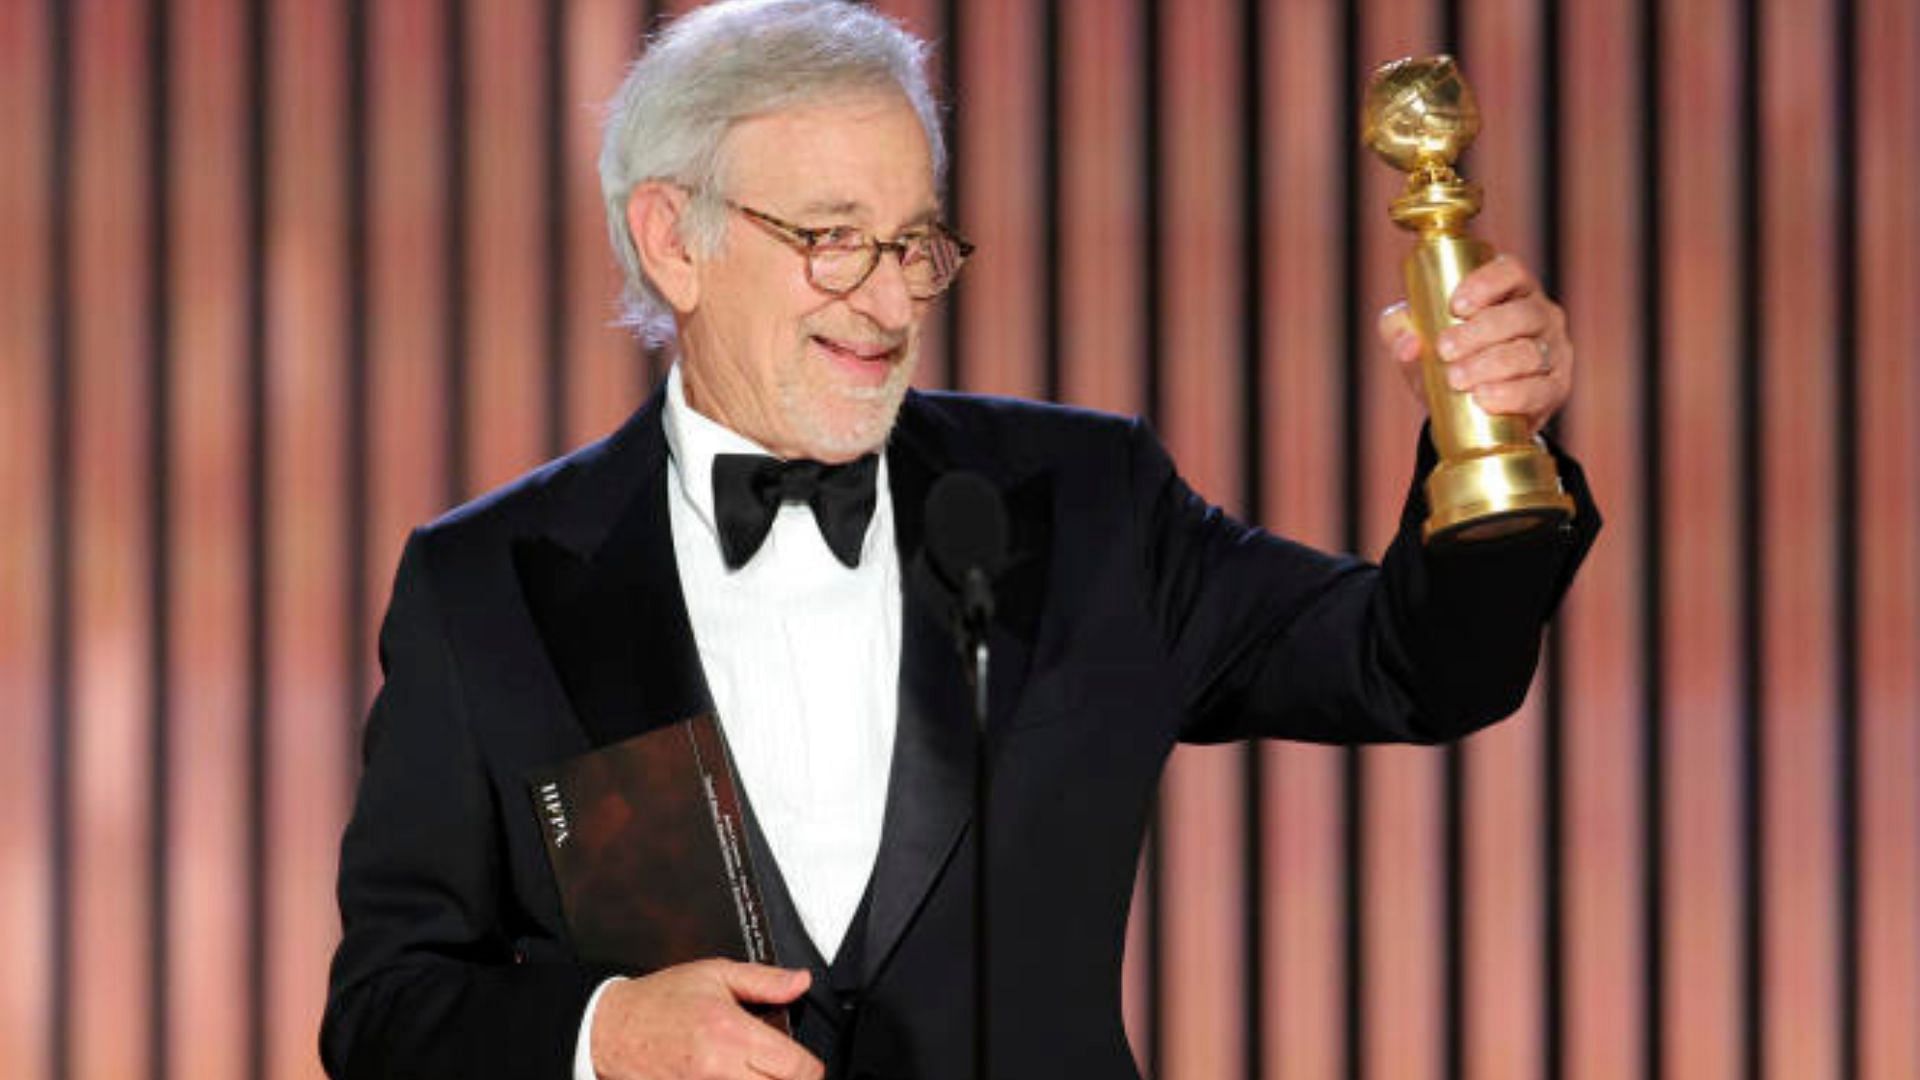 Spielberg (Image via Le Monde)